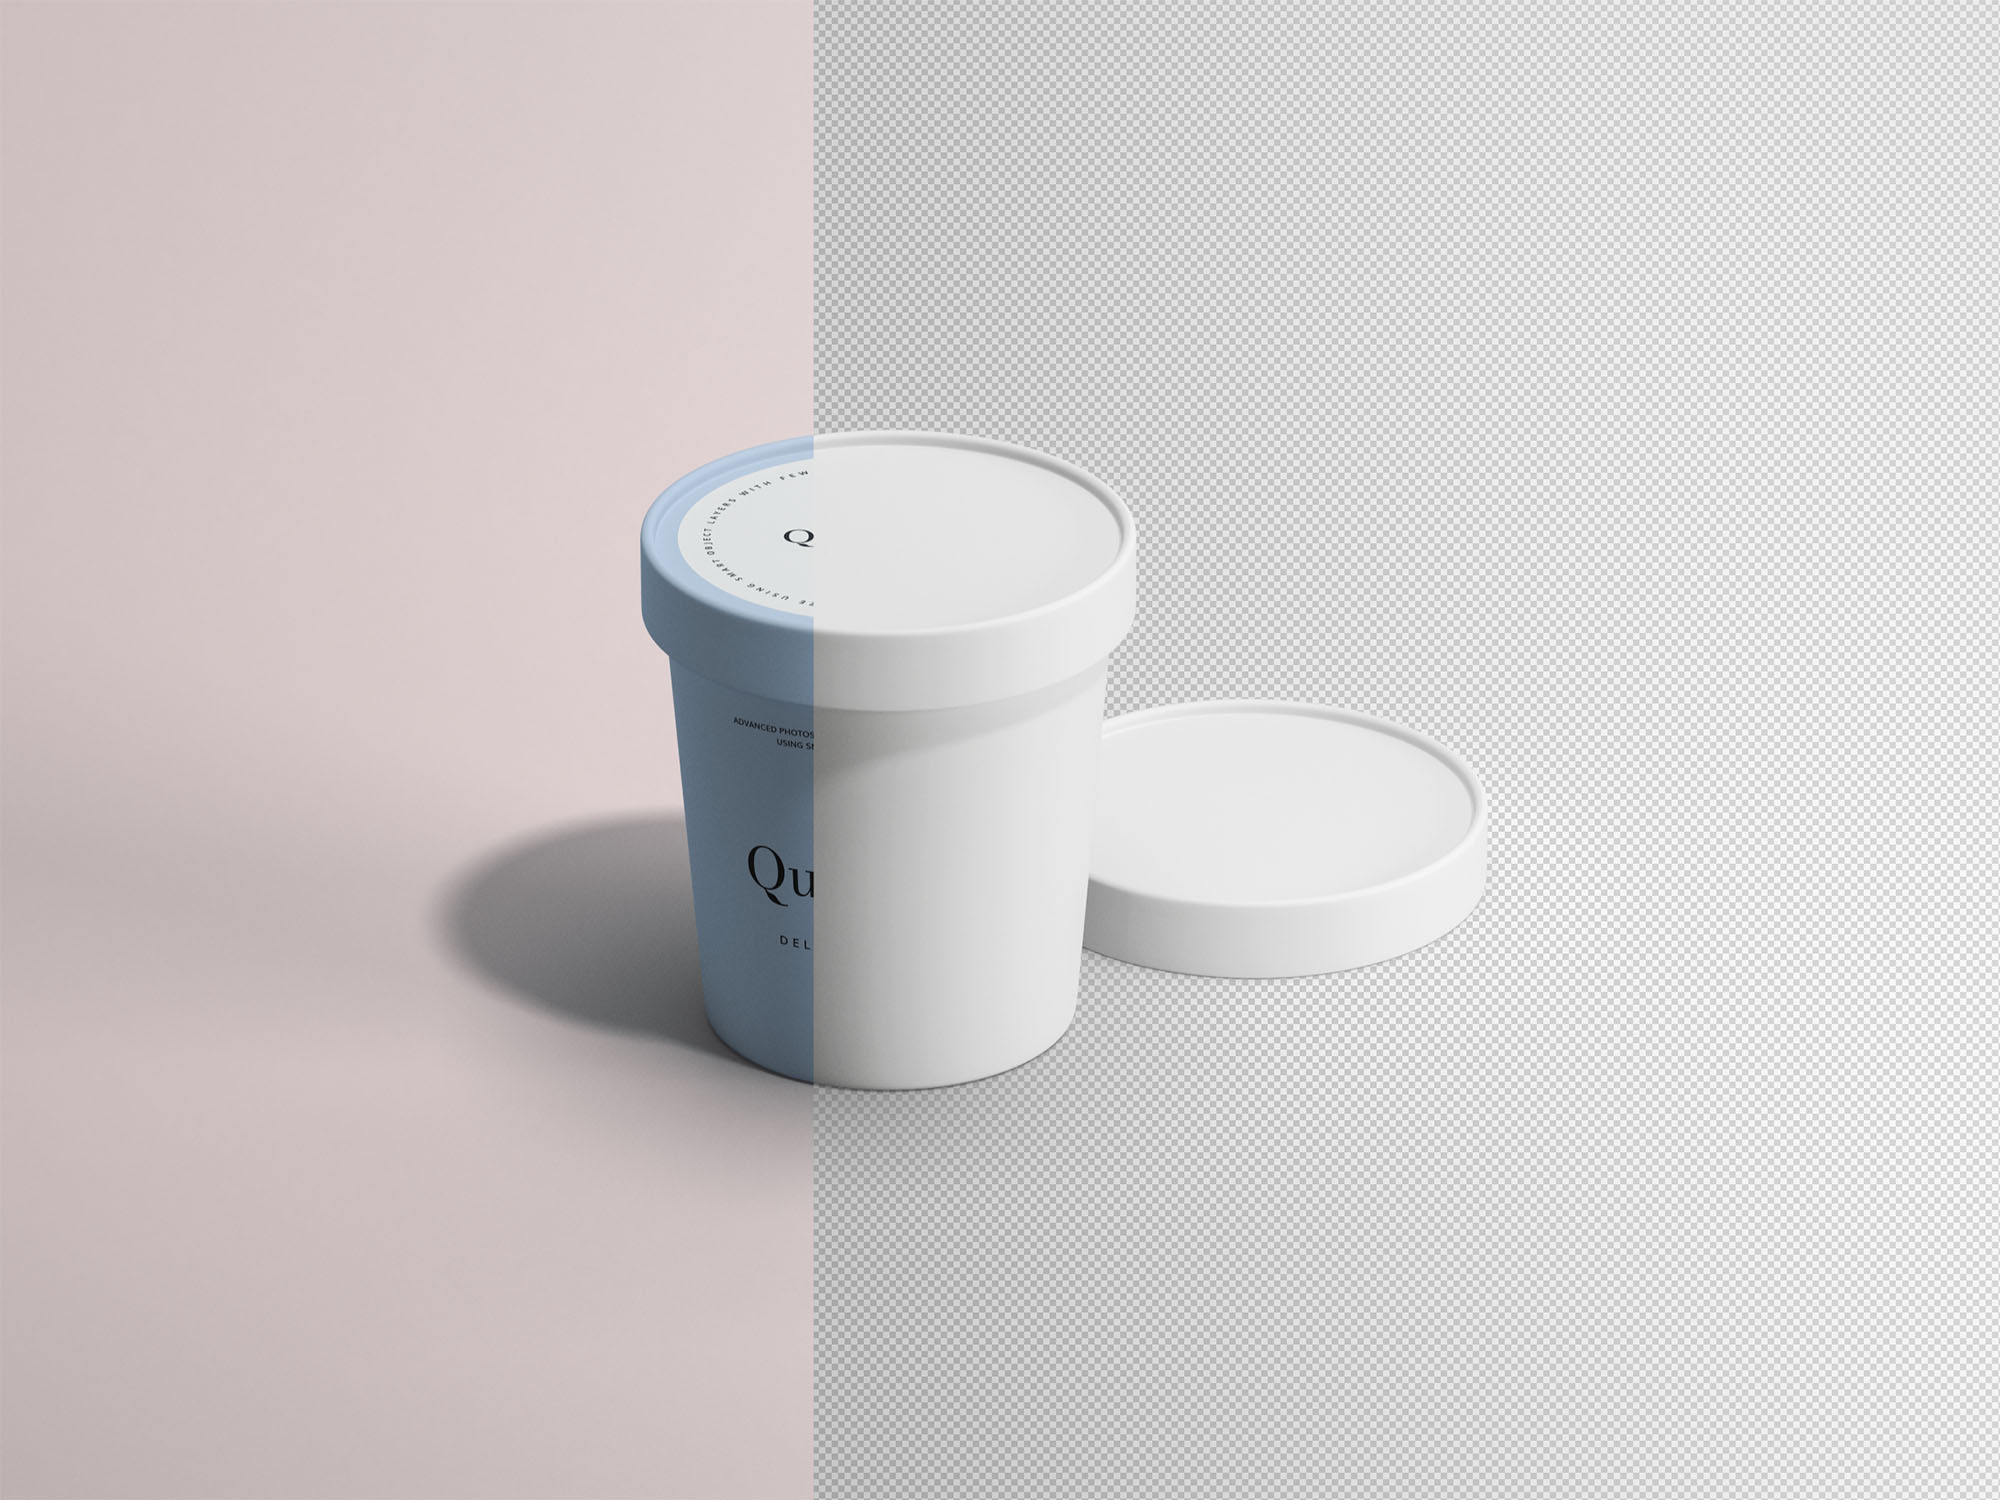 冰淇淋雪糕纸杯外观设计效果图素材库精选 Ice Cream Paper Cup Mockup插图(1)